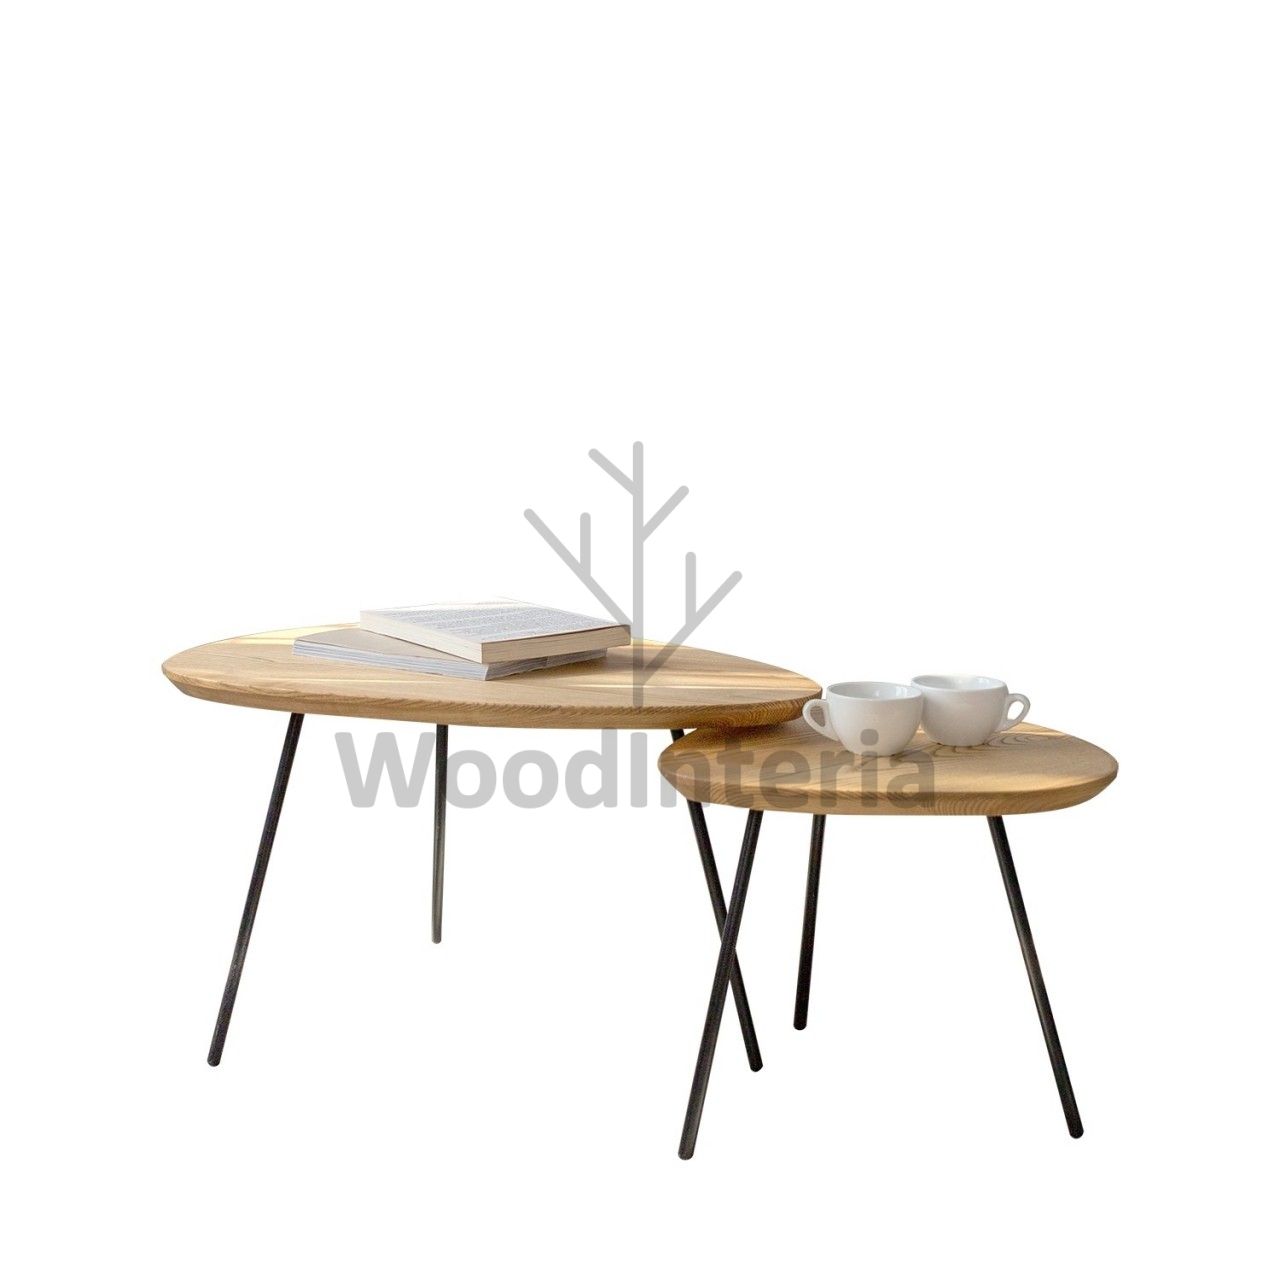 фото пара журнальных столиков blobe в интерьере лофт эко | WoodInteria